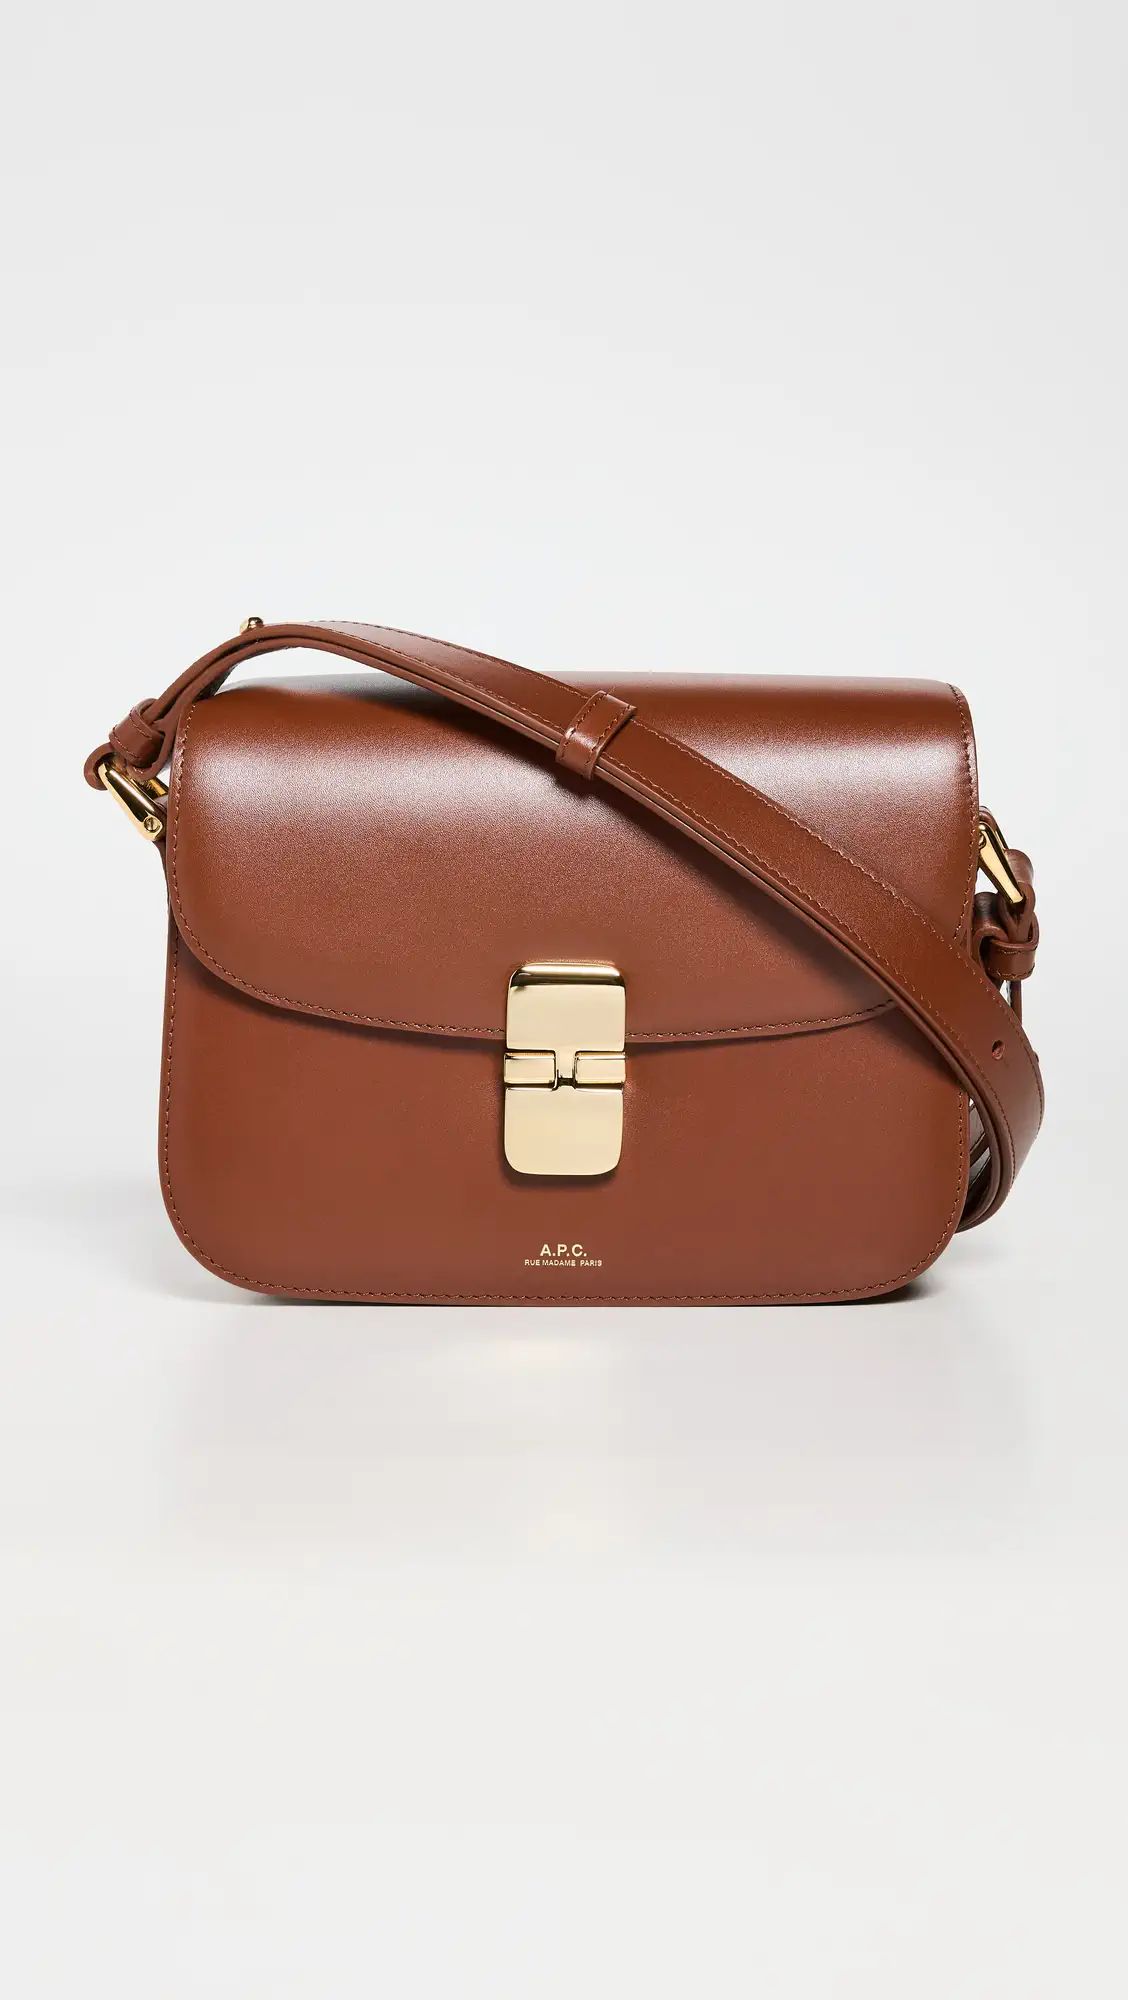 A.P.C. Grace Small Bag | Shopbop | Shopbop